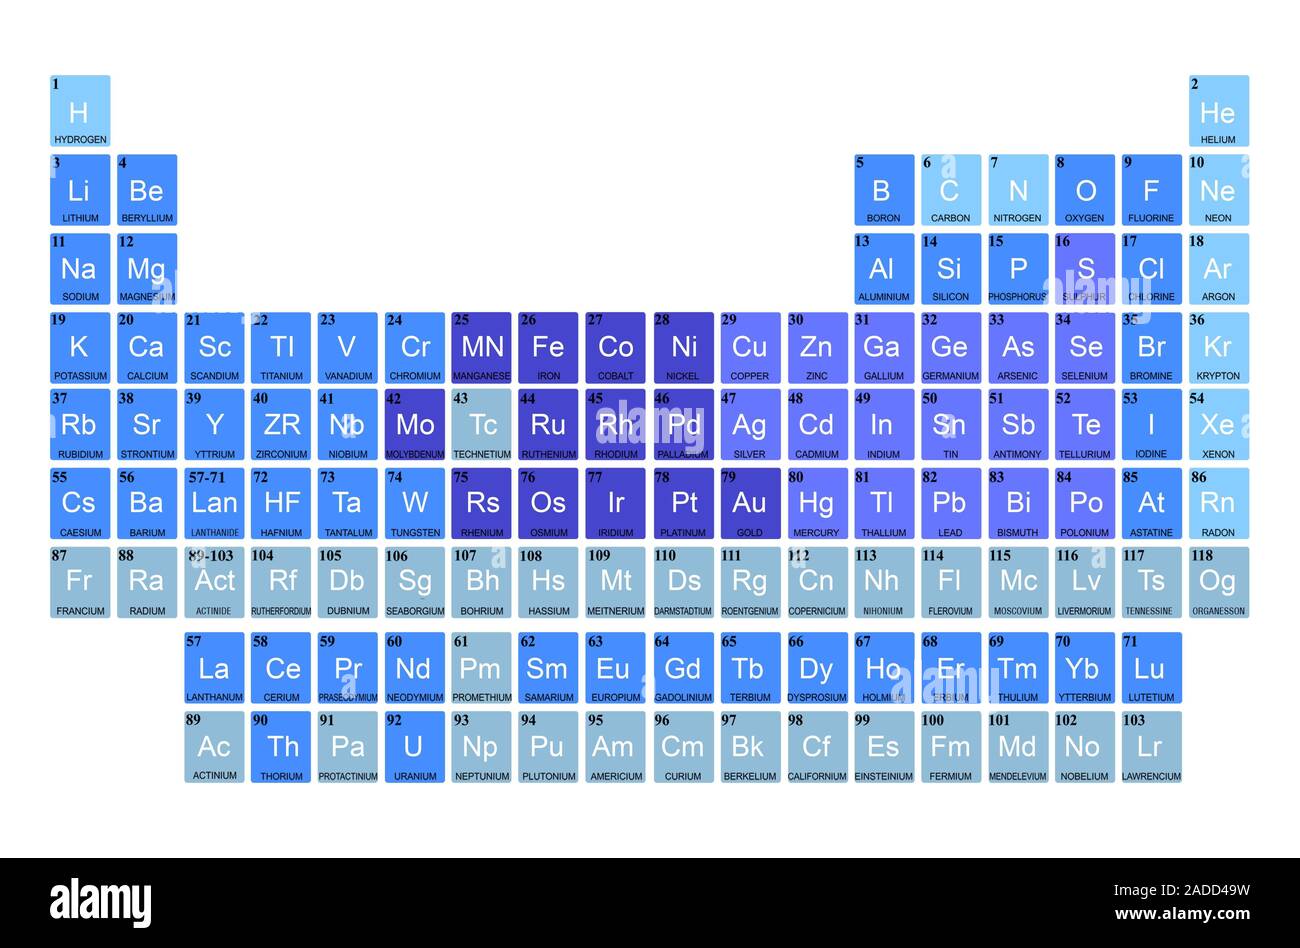 Tabla Periódica de los Elementos con 118 Elementos